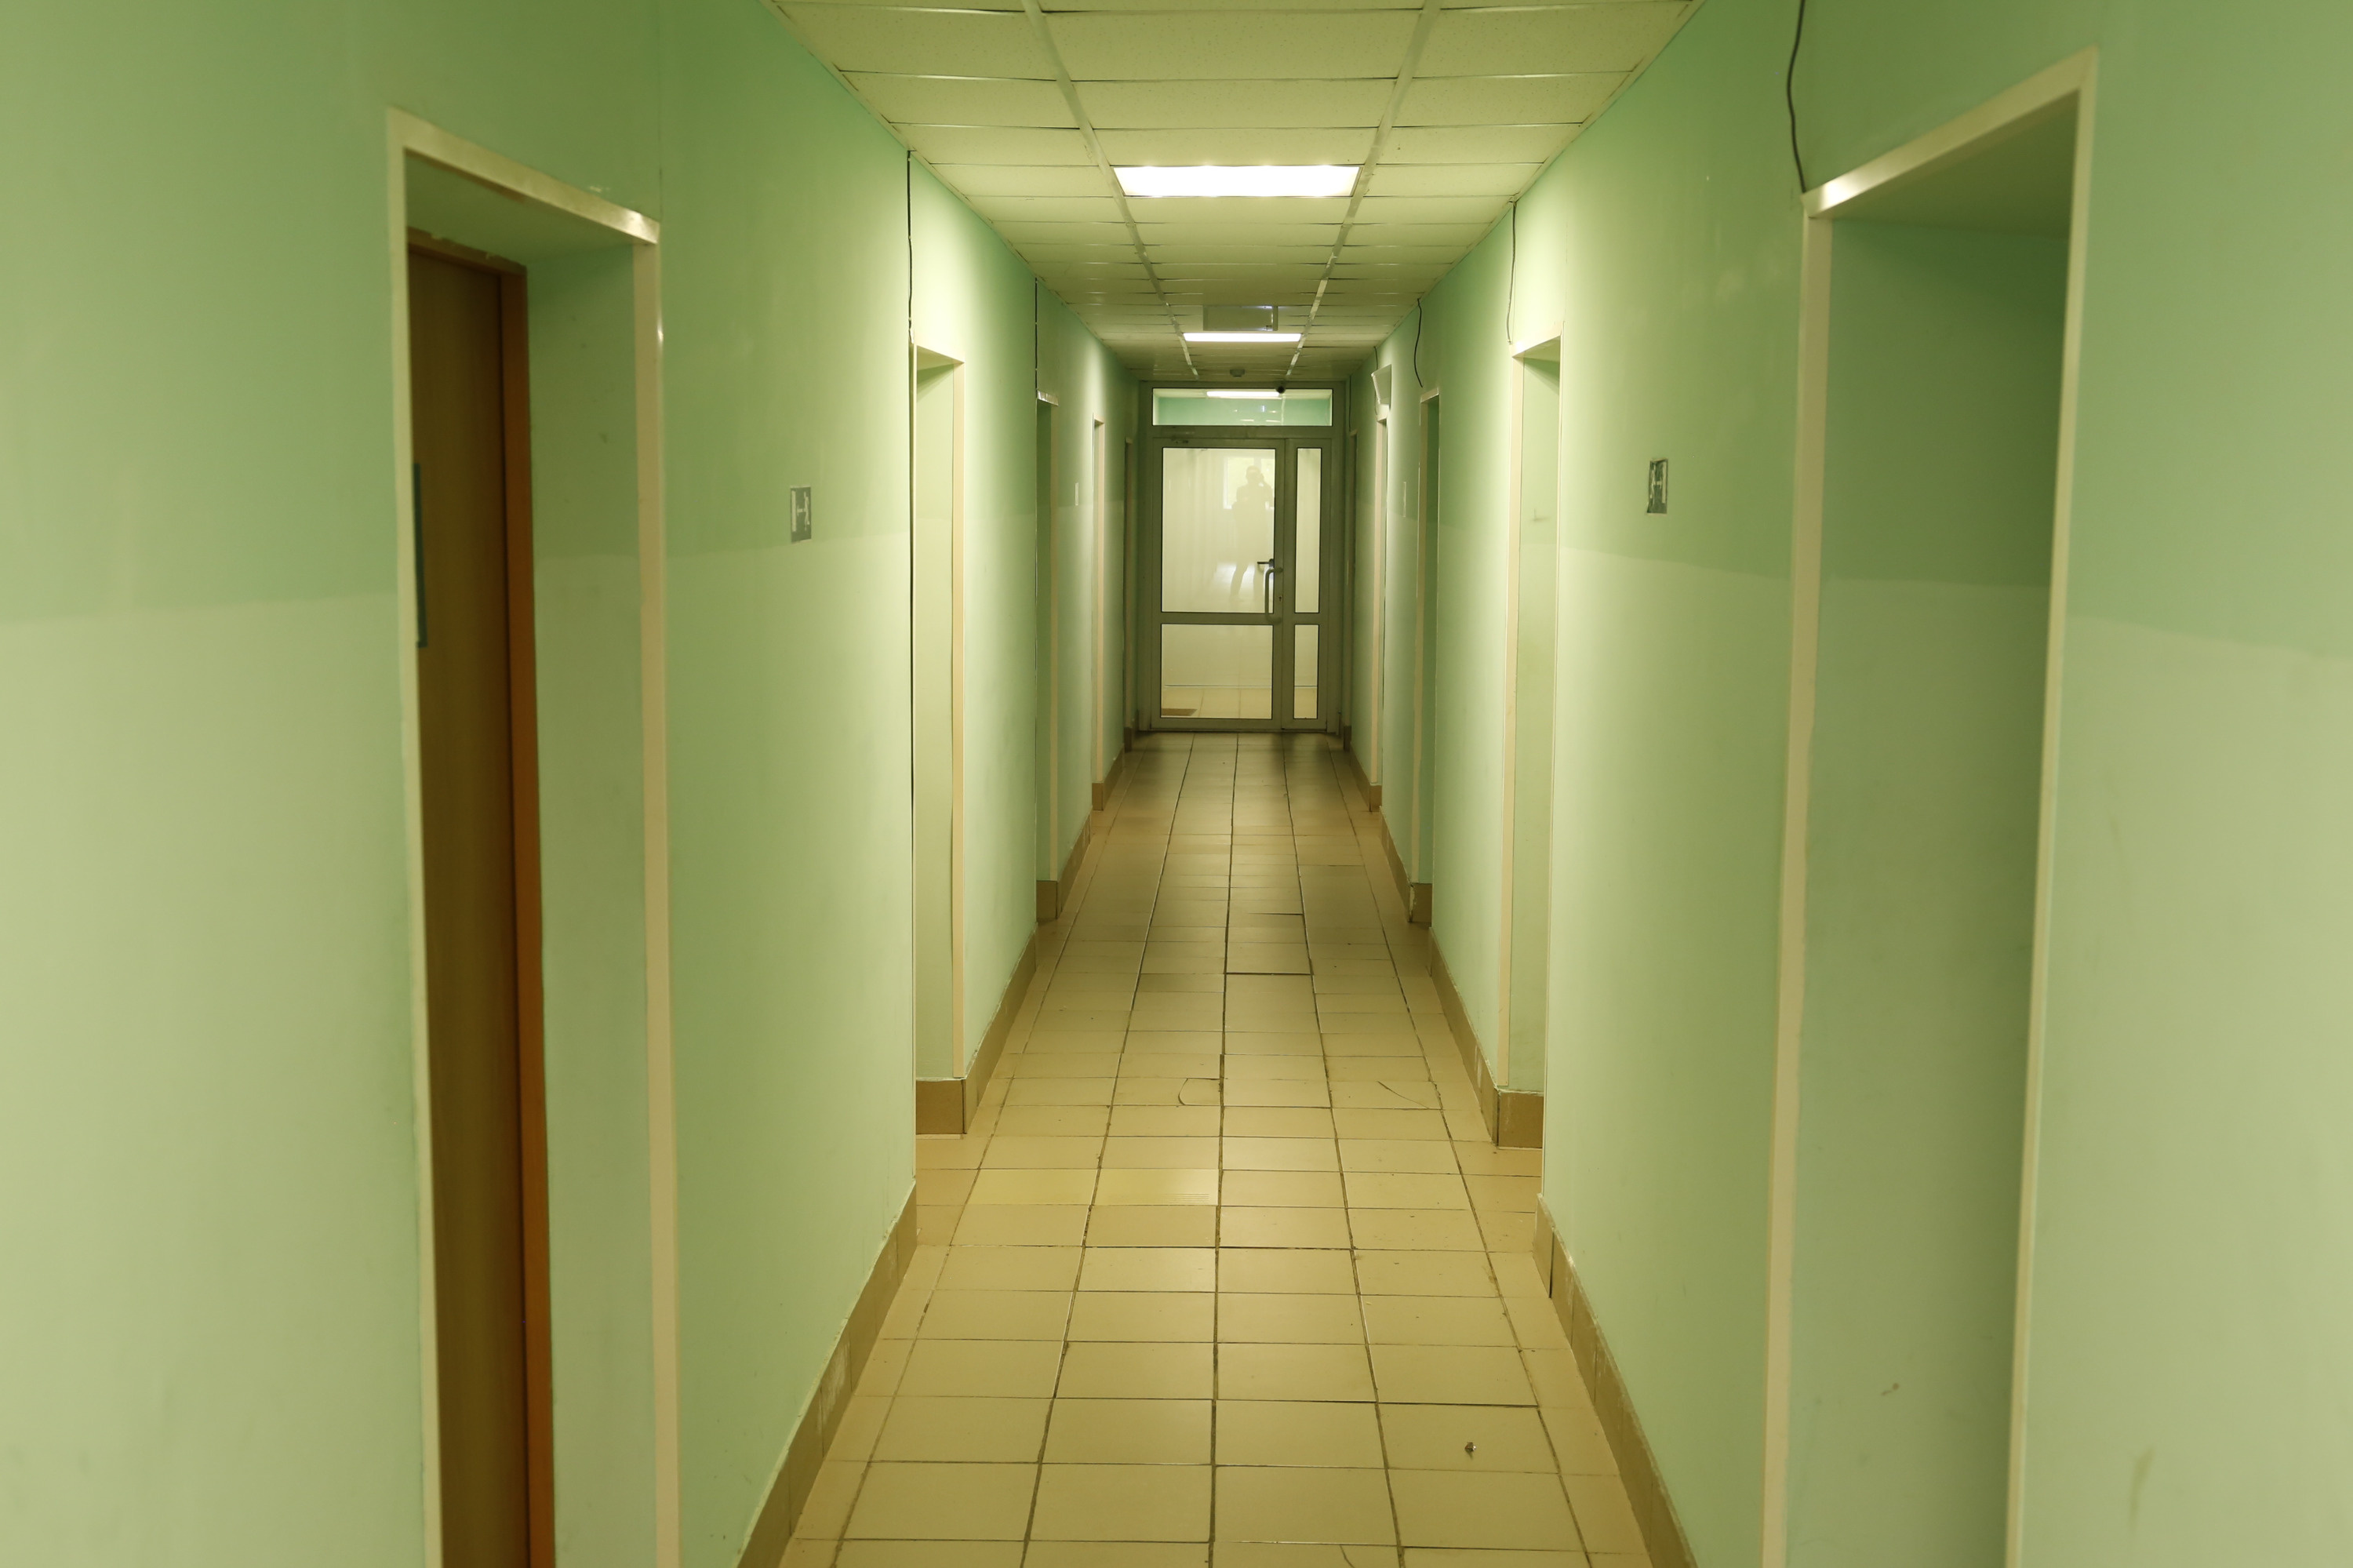 Длинный коридор, по обеим сторонам которого расположены комнаты